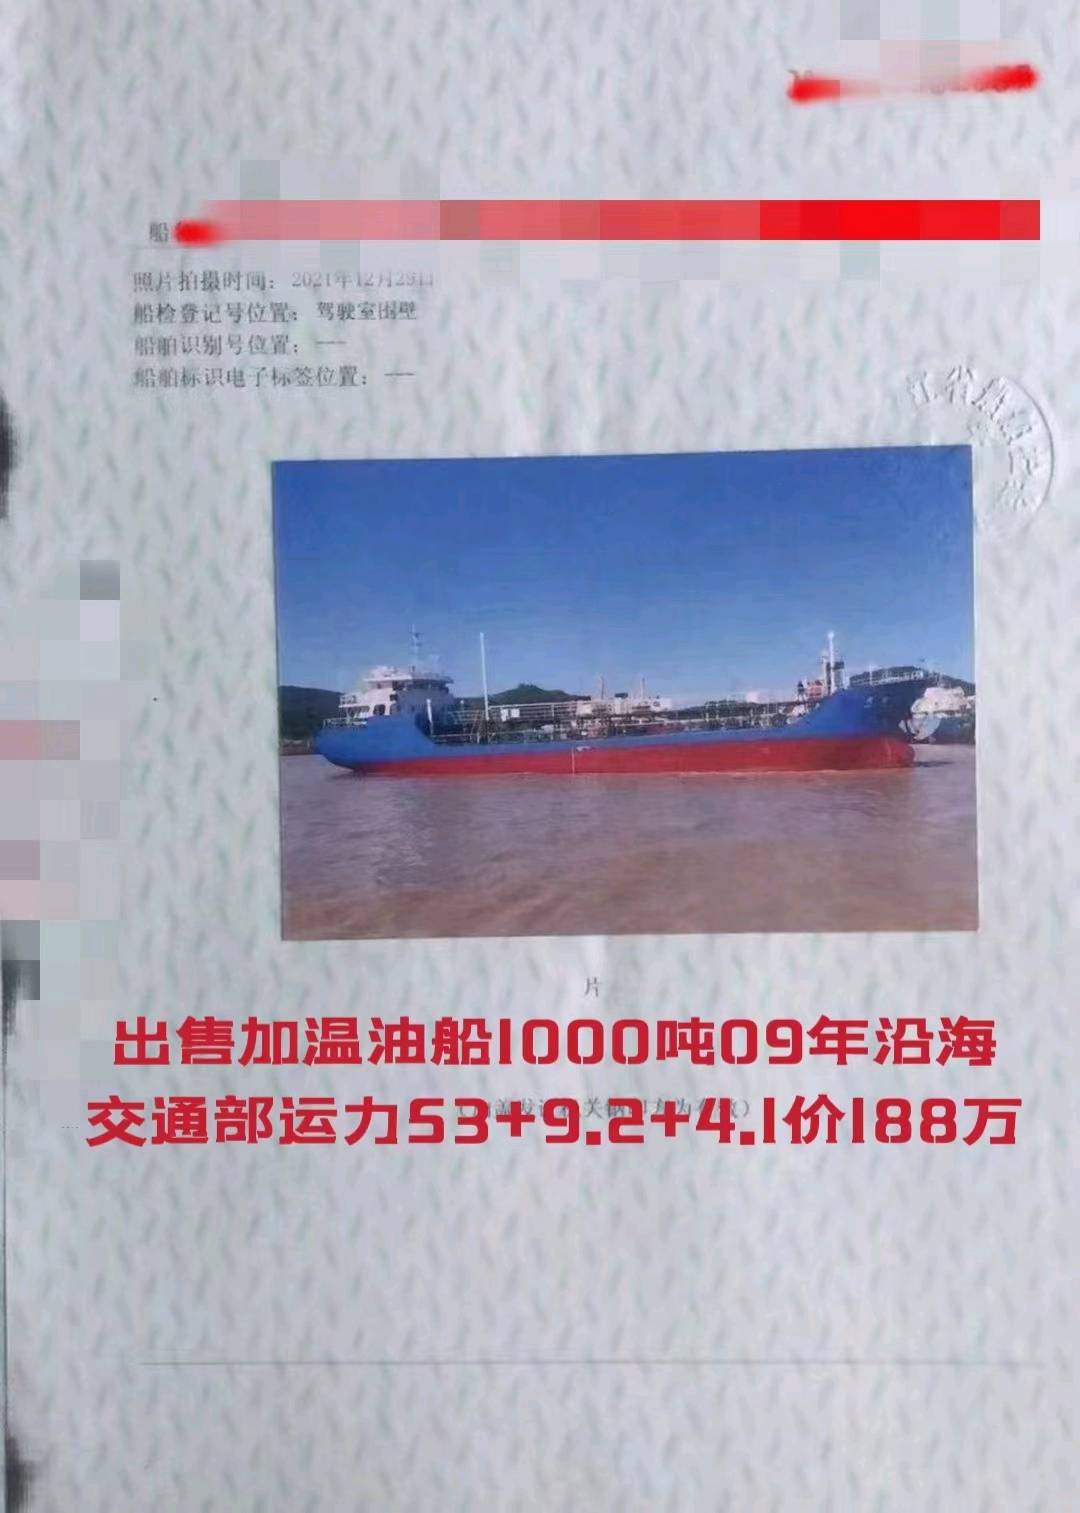 出售加温油船1000吨09年沿海